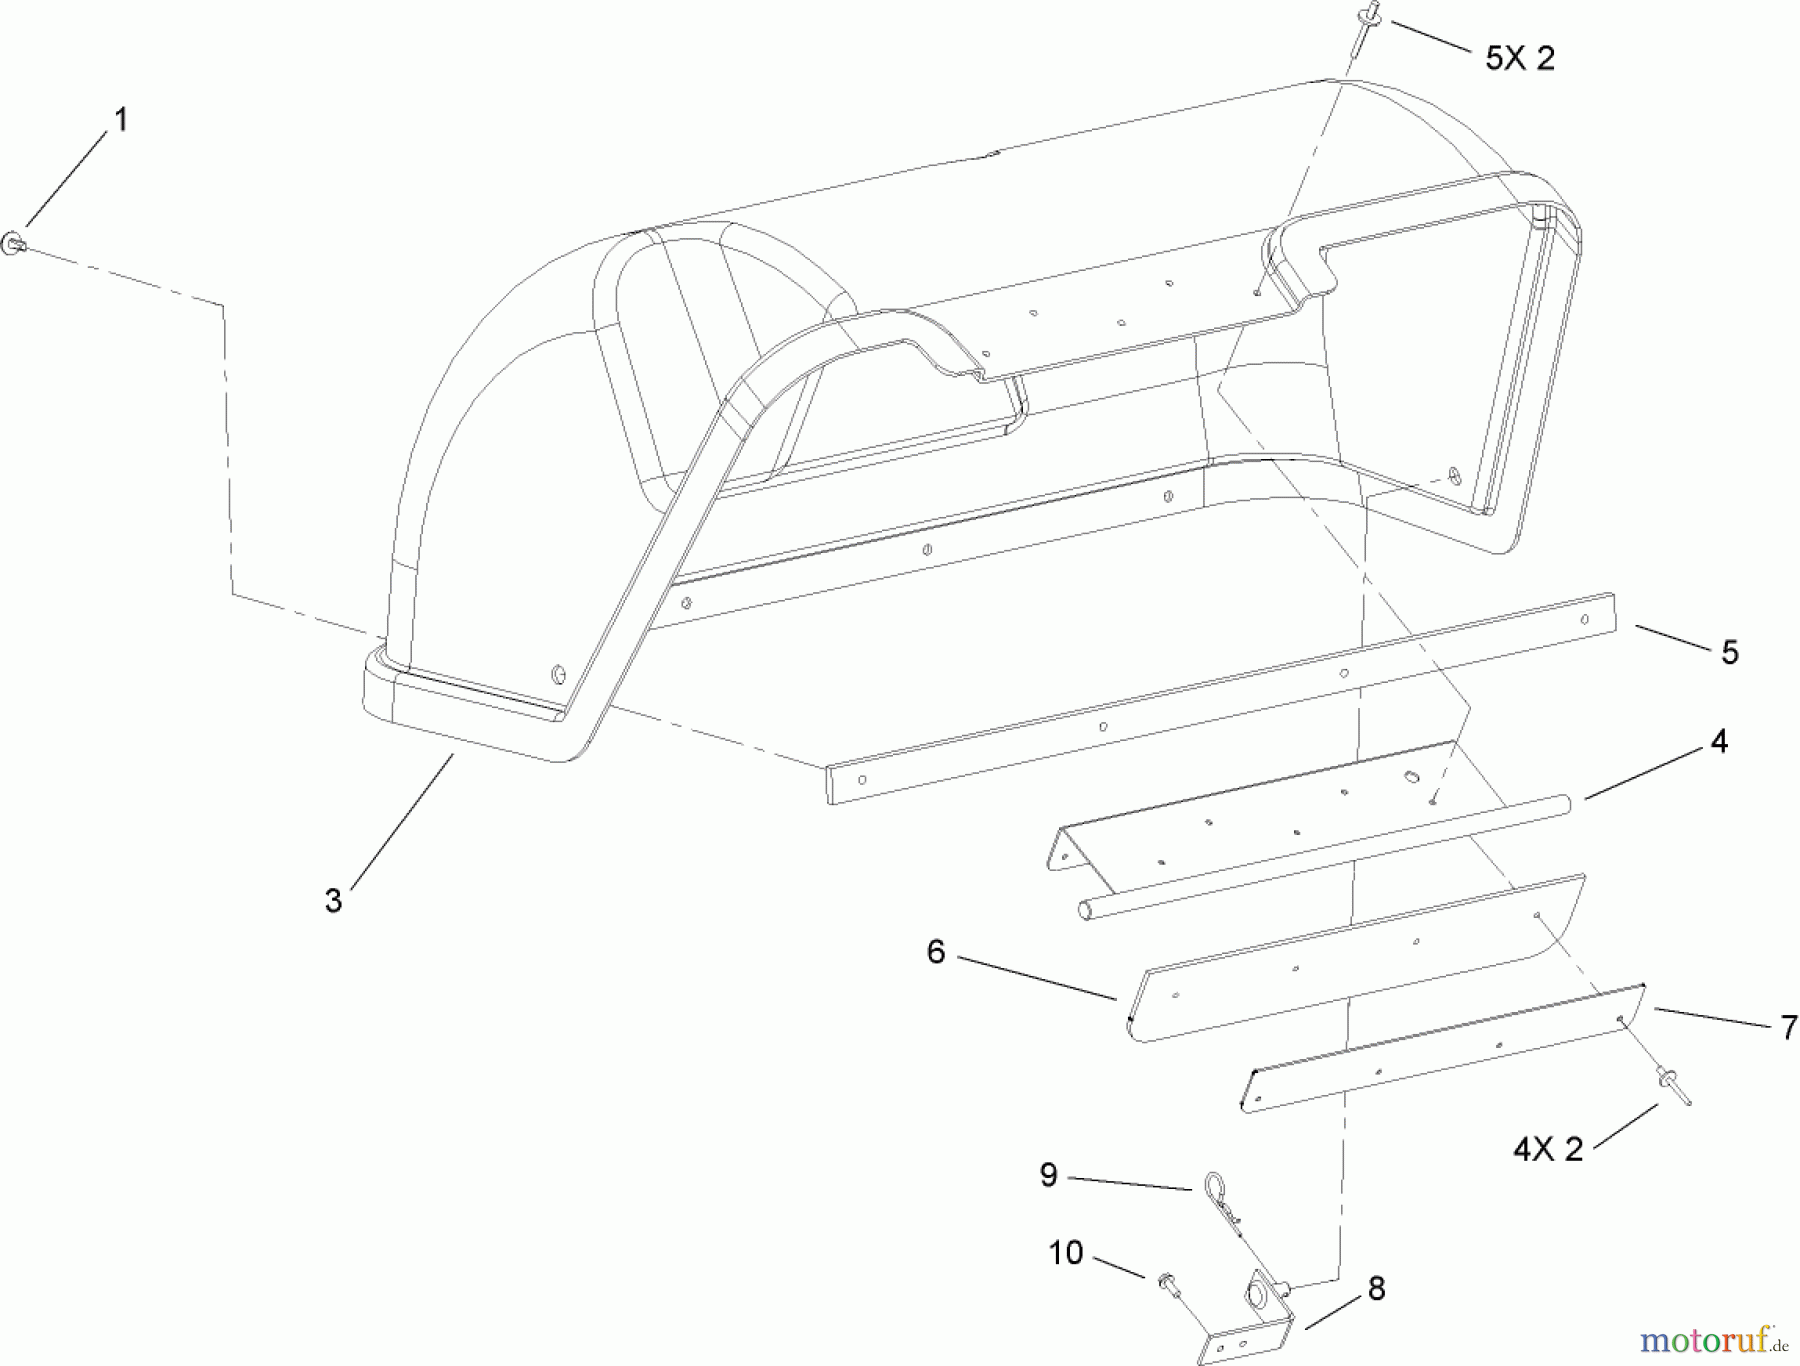  Toro Neu Accessories, Mower 74435 - Toro Rear Deflector Kit, TimeCutter ZD Series Riding Mower DEFLECTOR ASSEMBLY